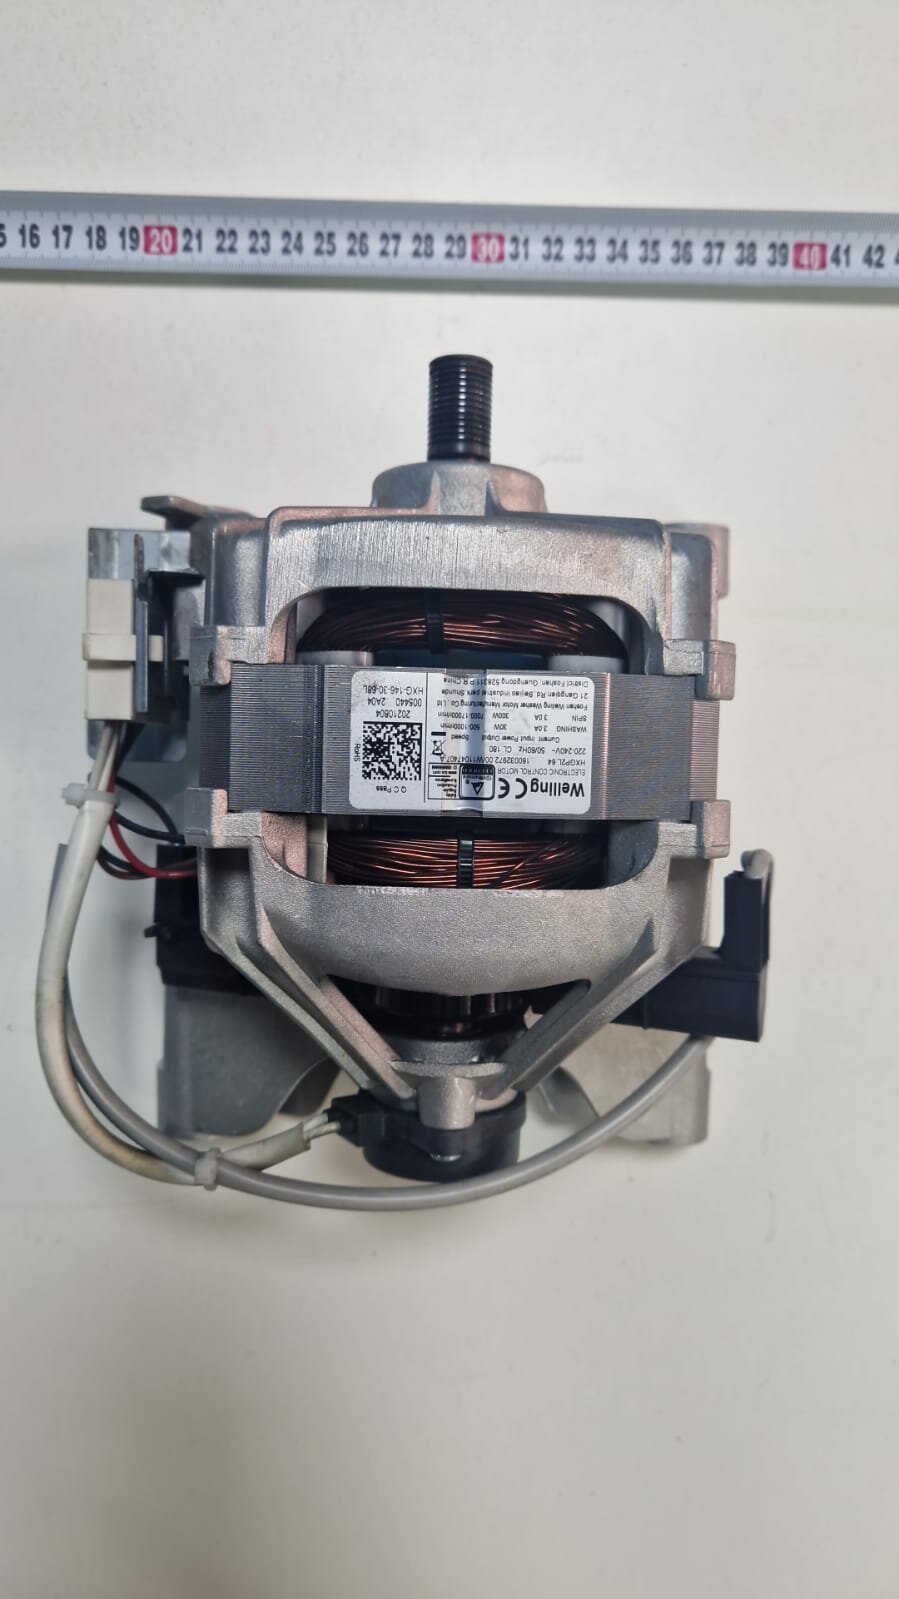 Двигатель Indesit Welling 160032972.00 -6 контактов для стиральной машины